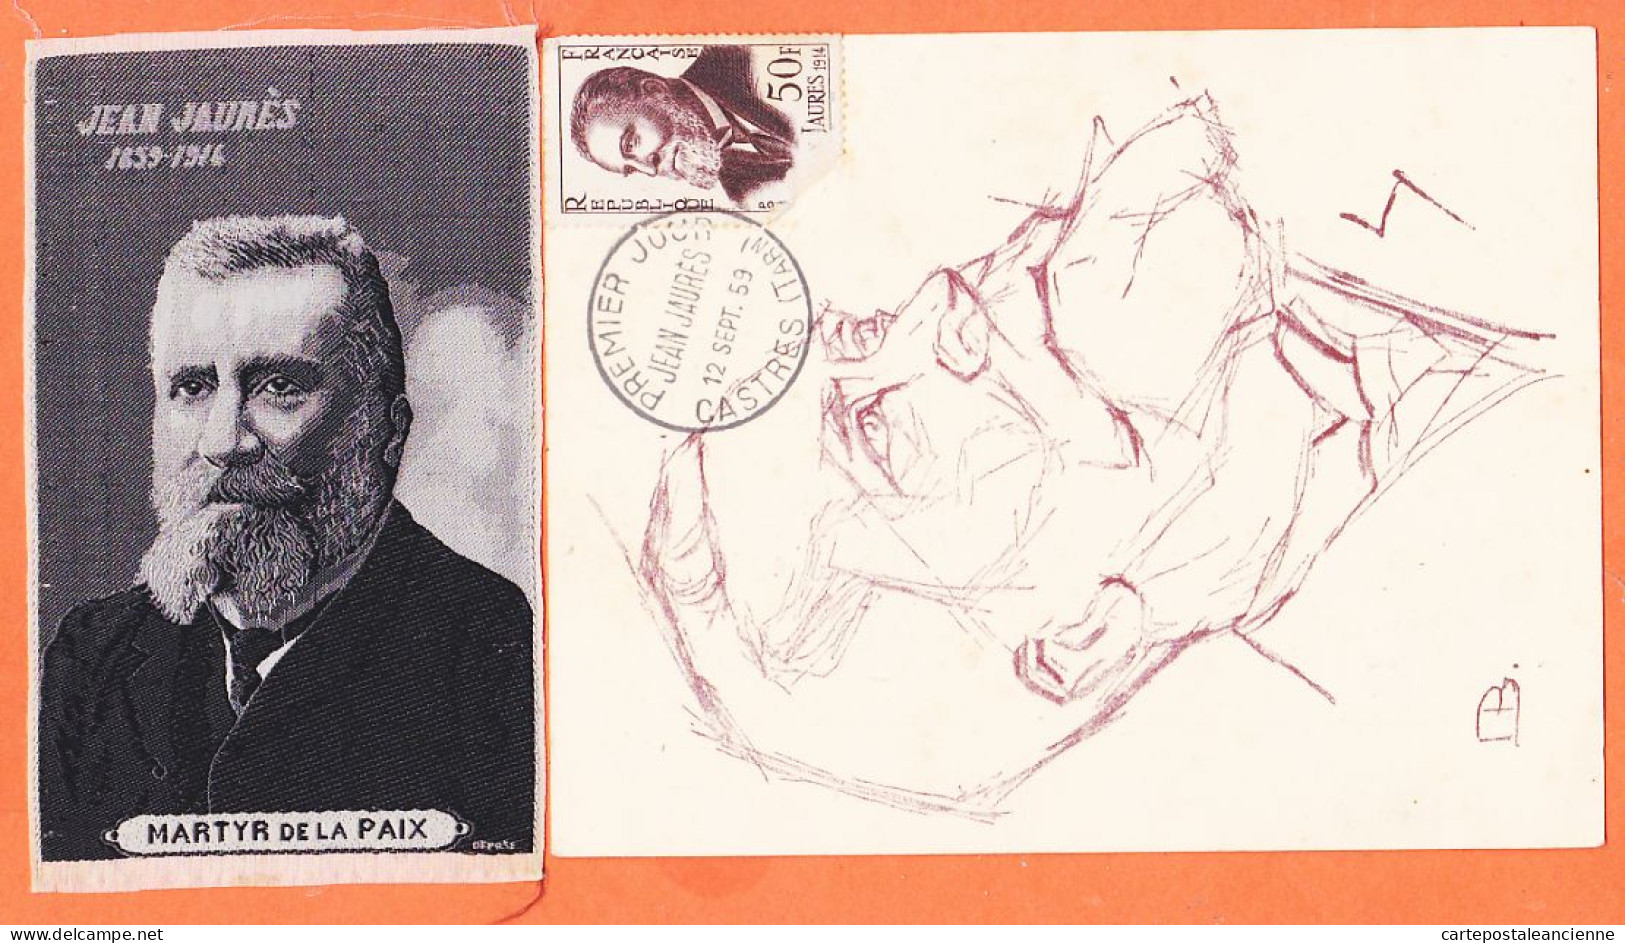 00360 ● JAURES Député SOCIALISTE Assassiné à PARIS 1859-1914 Apôtre PAIX + Portrait Tissé SOIE MARTYR 6,5x11-S.F.IO - Eventi